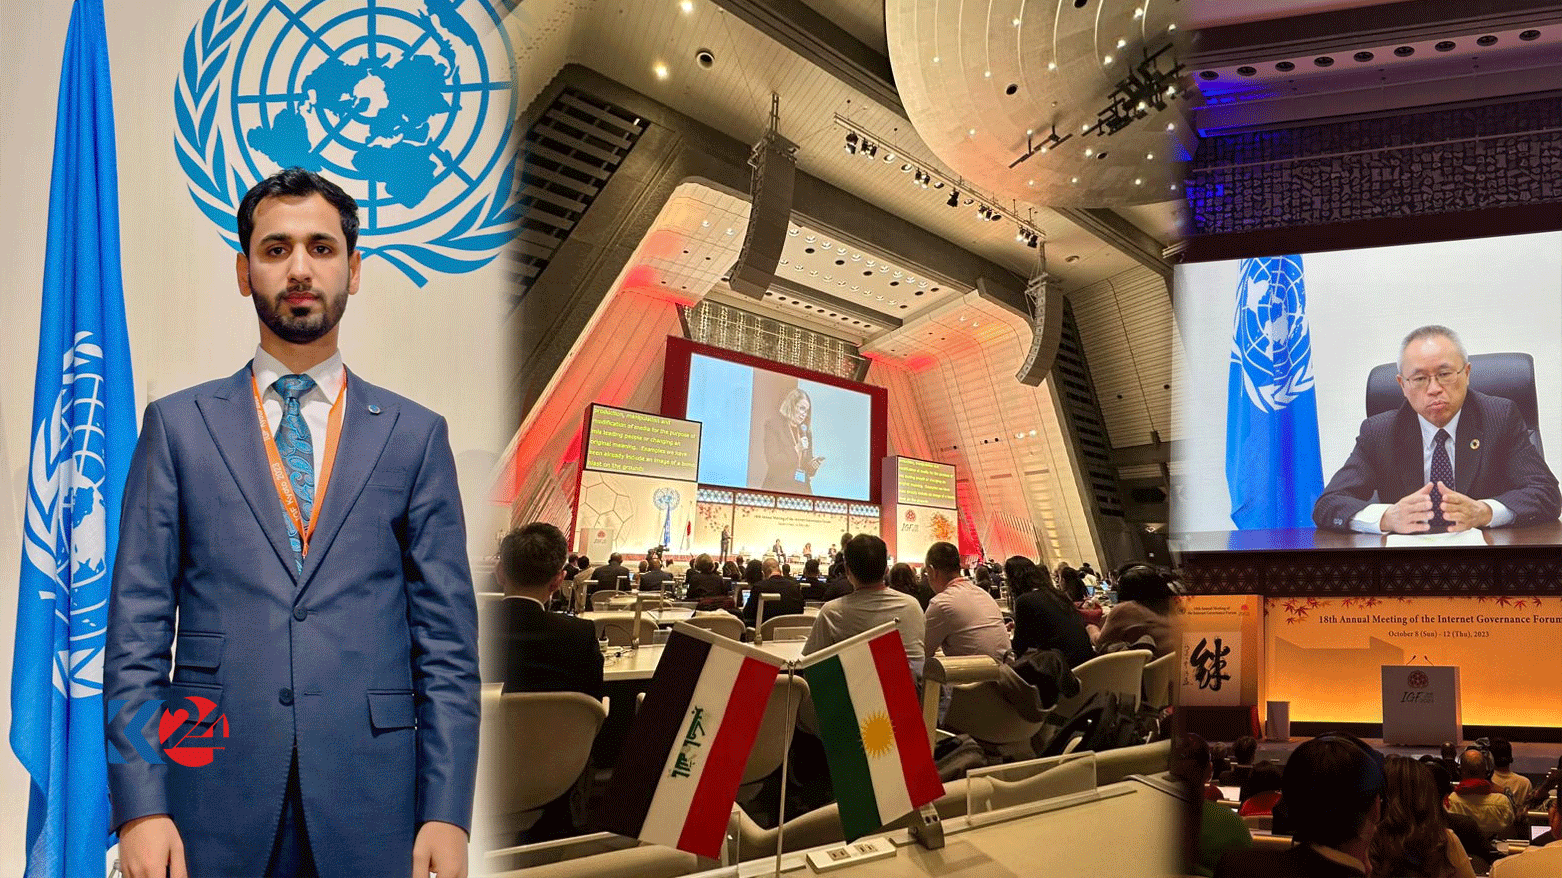 رمضان شیروانی، نماینده کورد عراق در ١٨مین مجمع عالی سازمان ملل در خصوص مدیریت اینترنت در کیوتوی ژاپن